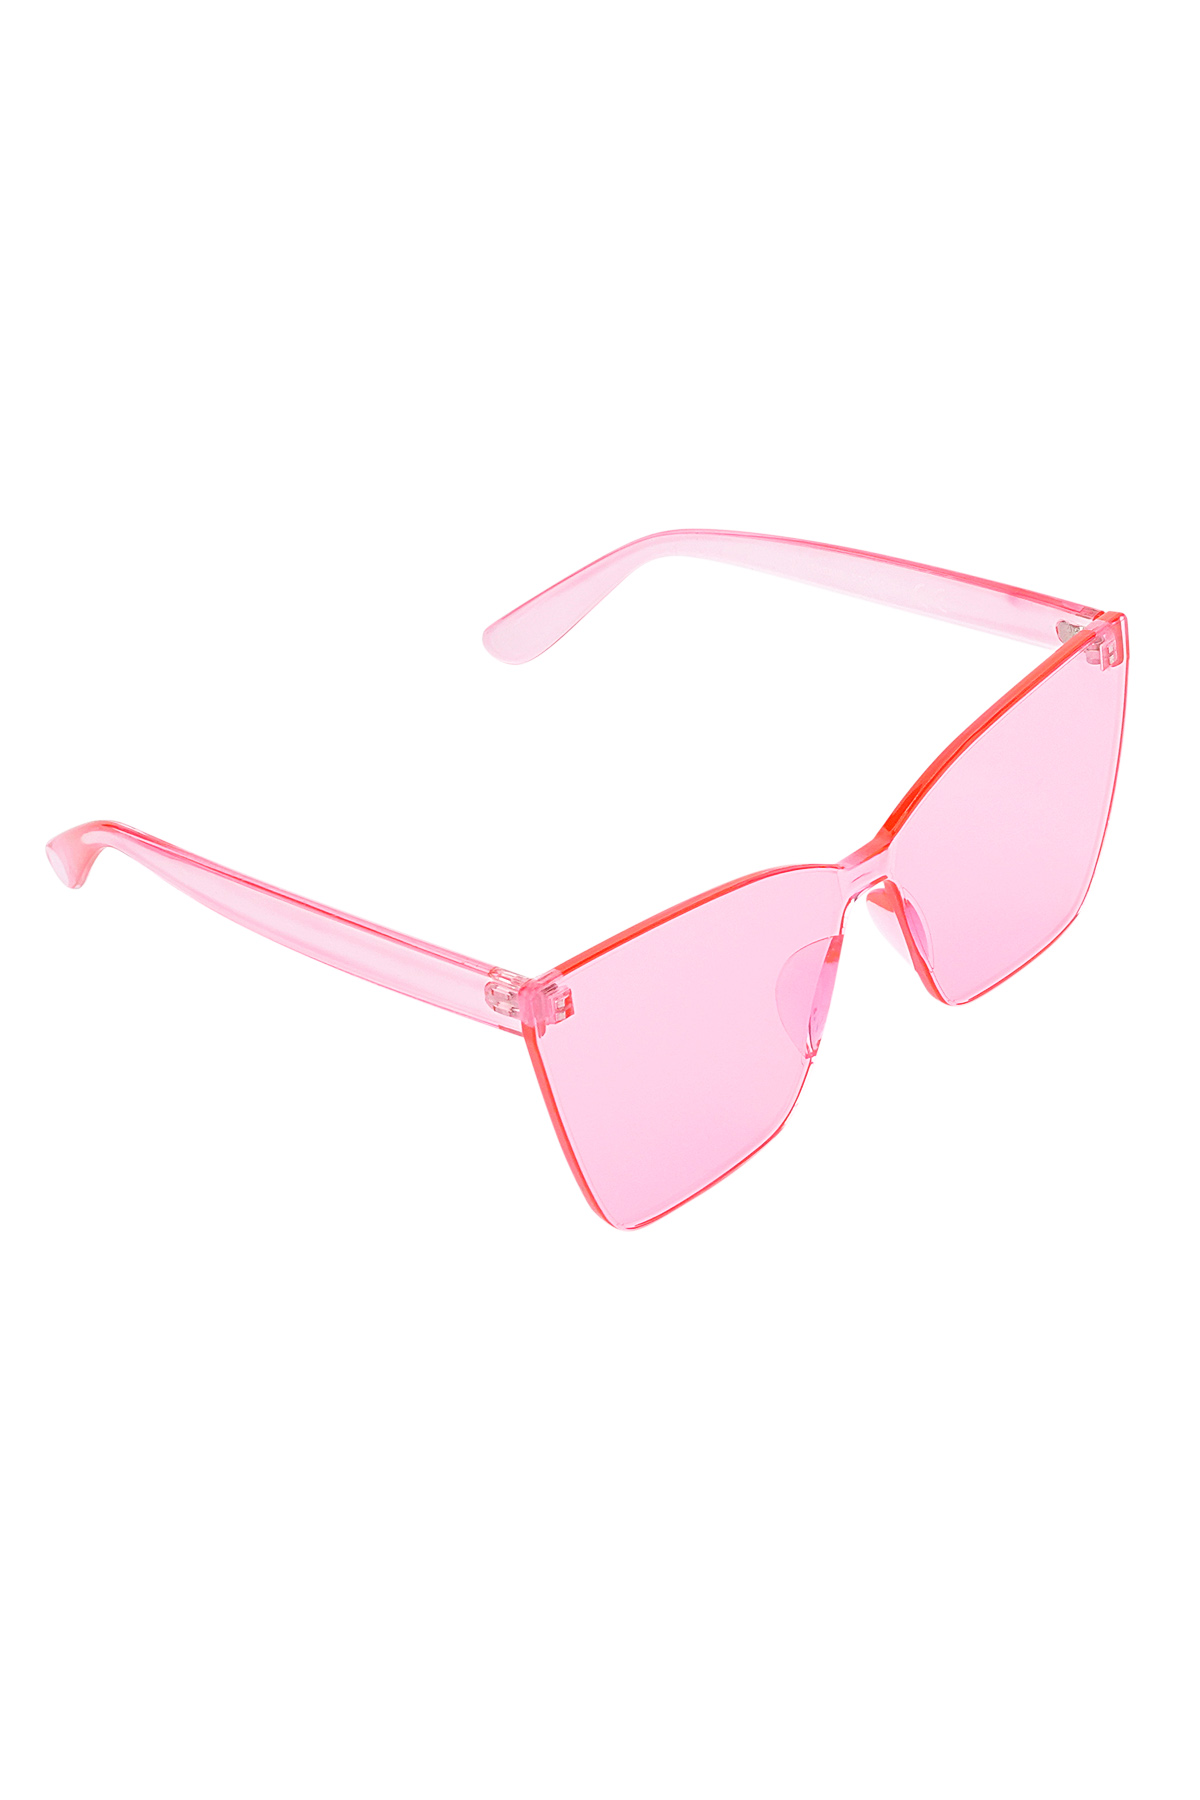 Eenkleurige daily zonnebril - roze